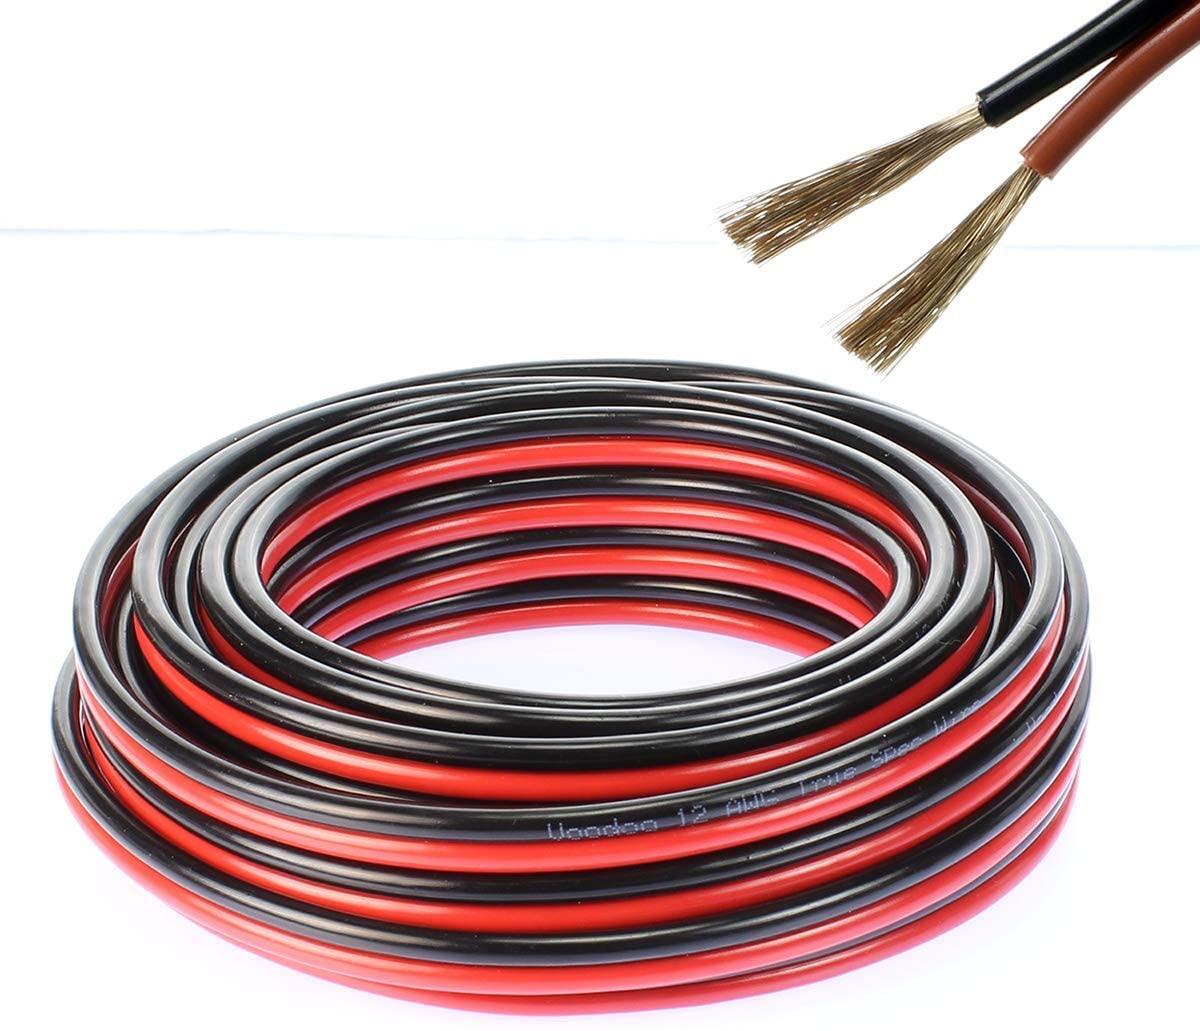 สายไฟ แดงดำ 15awg (1.5 mm²) สายลำโพง สายไฟคู่ สายคู่ electrical wire cable เครื่องเสียง รถยนต์ car a สี ชุด 20 เมตร สี ชุด 20 เมตร